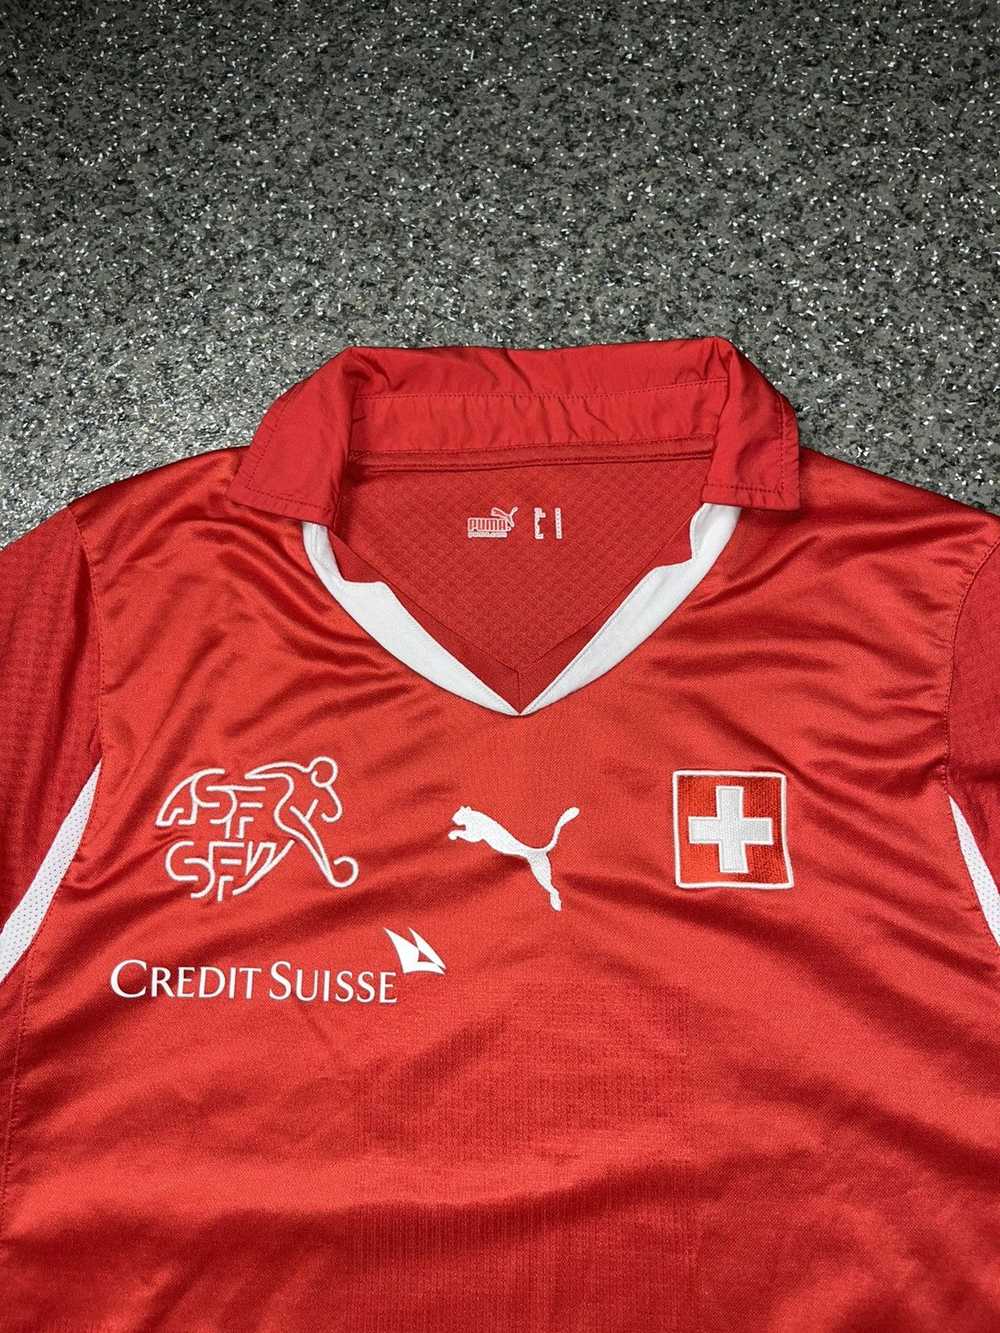 Jersey × Puma × Soccer Jersey Puma Switzerland 20… - image 3